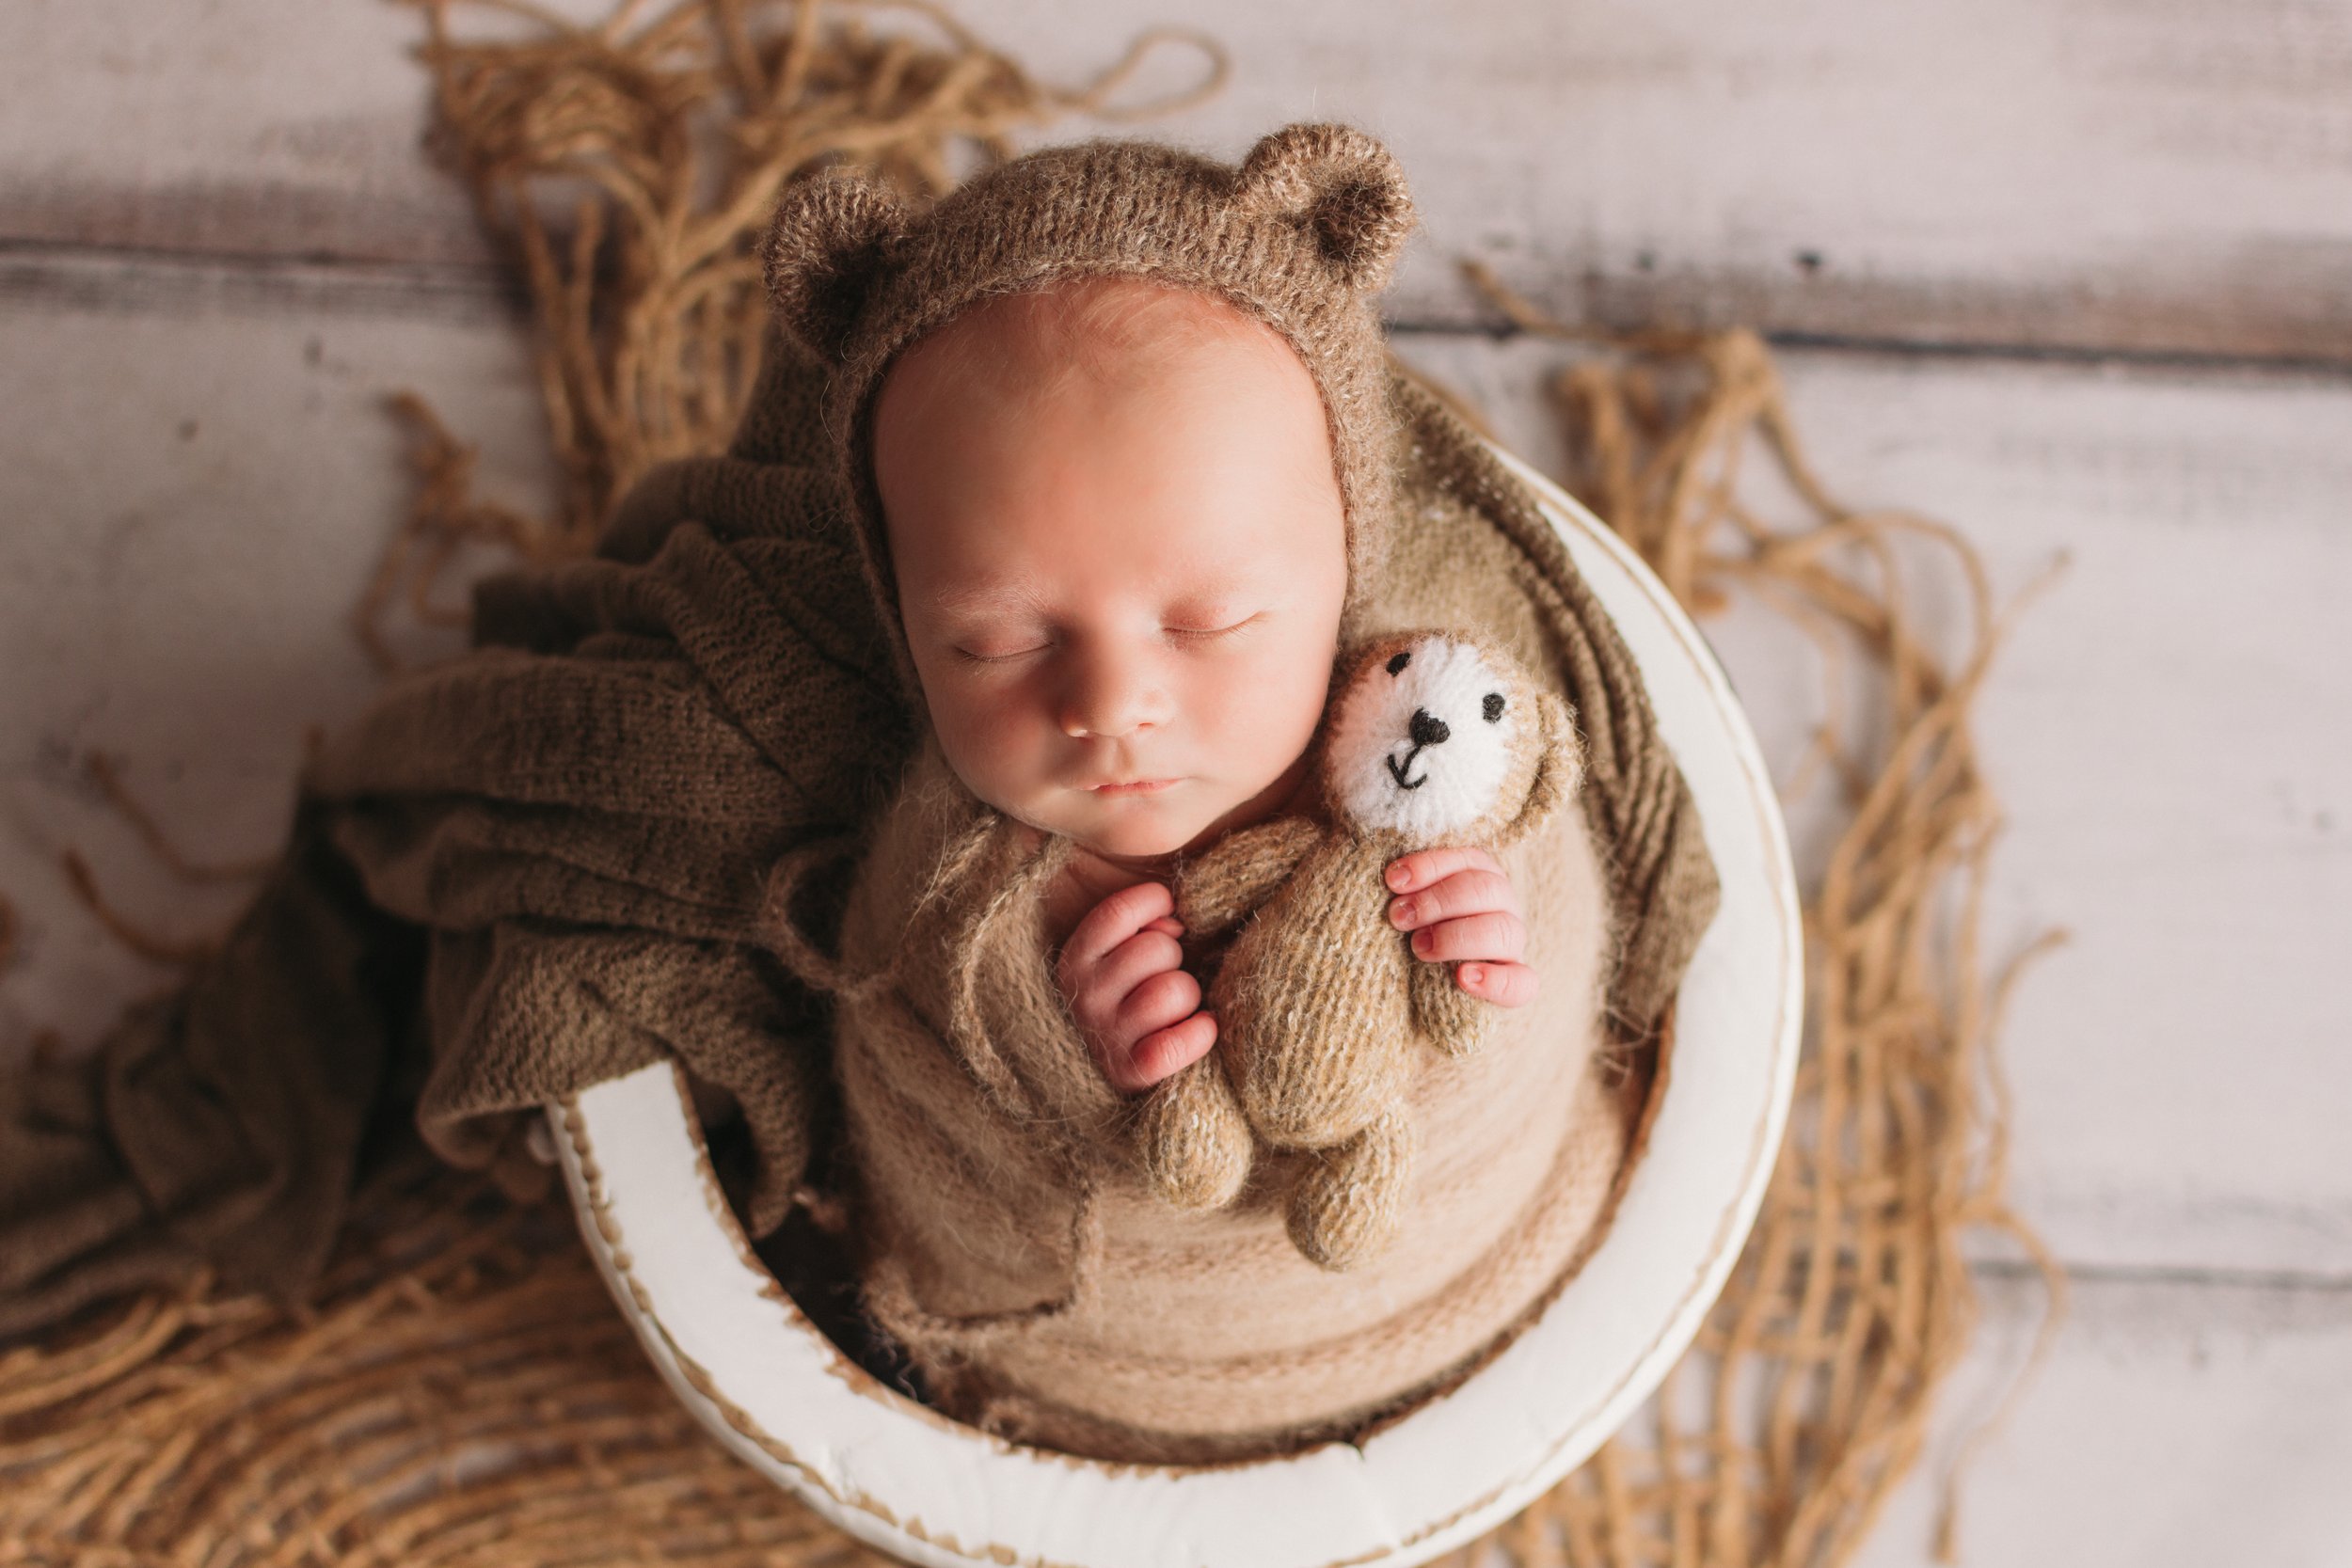 newborn in bucket holding teddy bear wearing bonnet